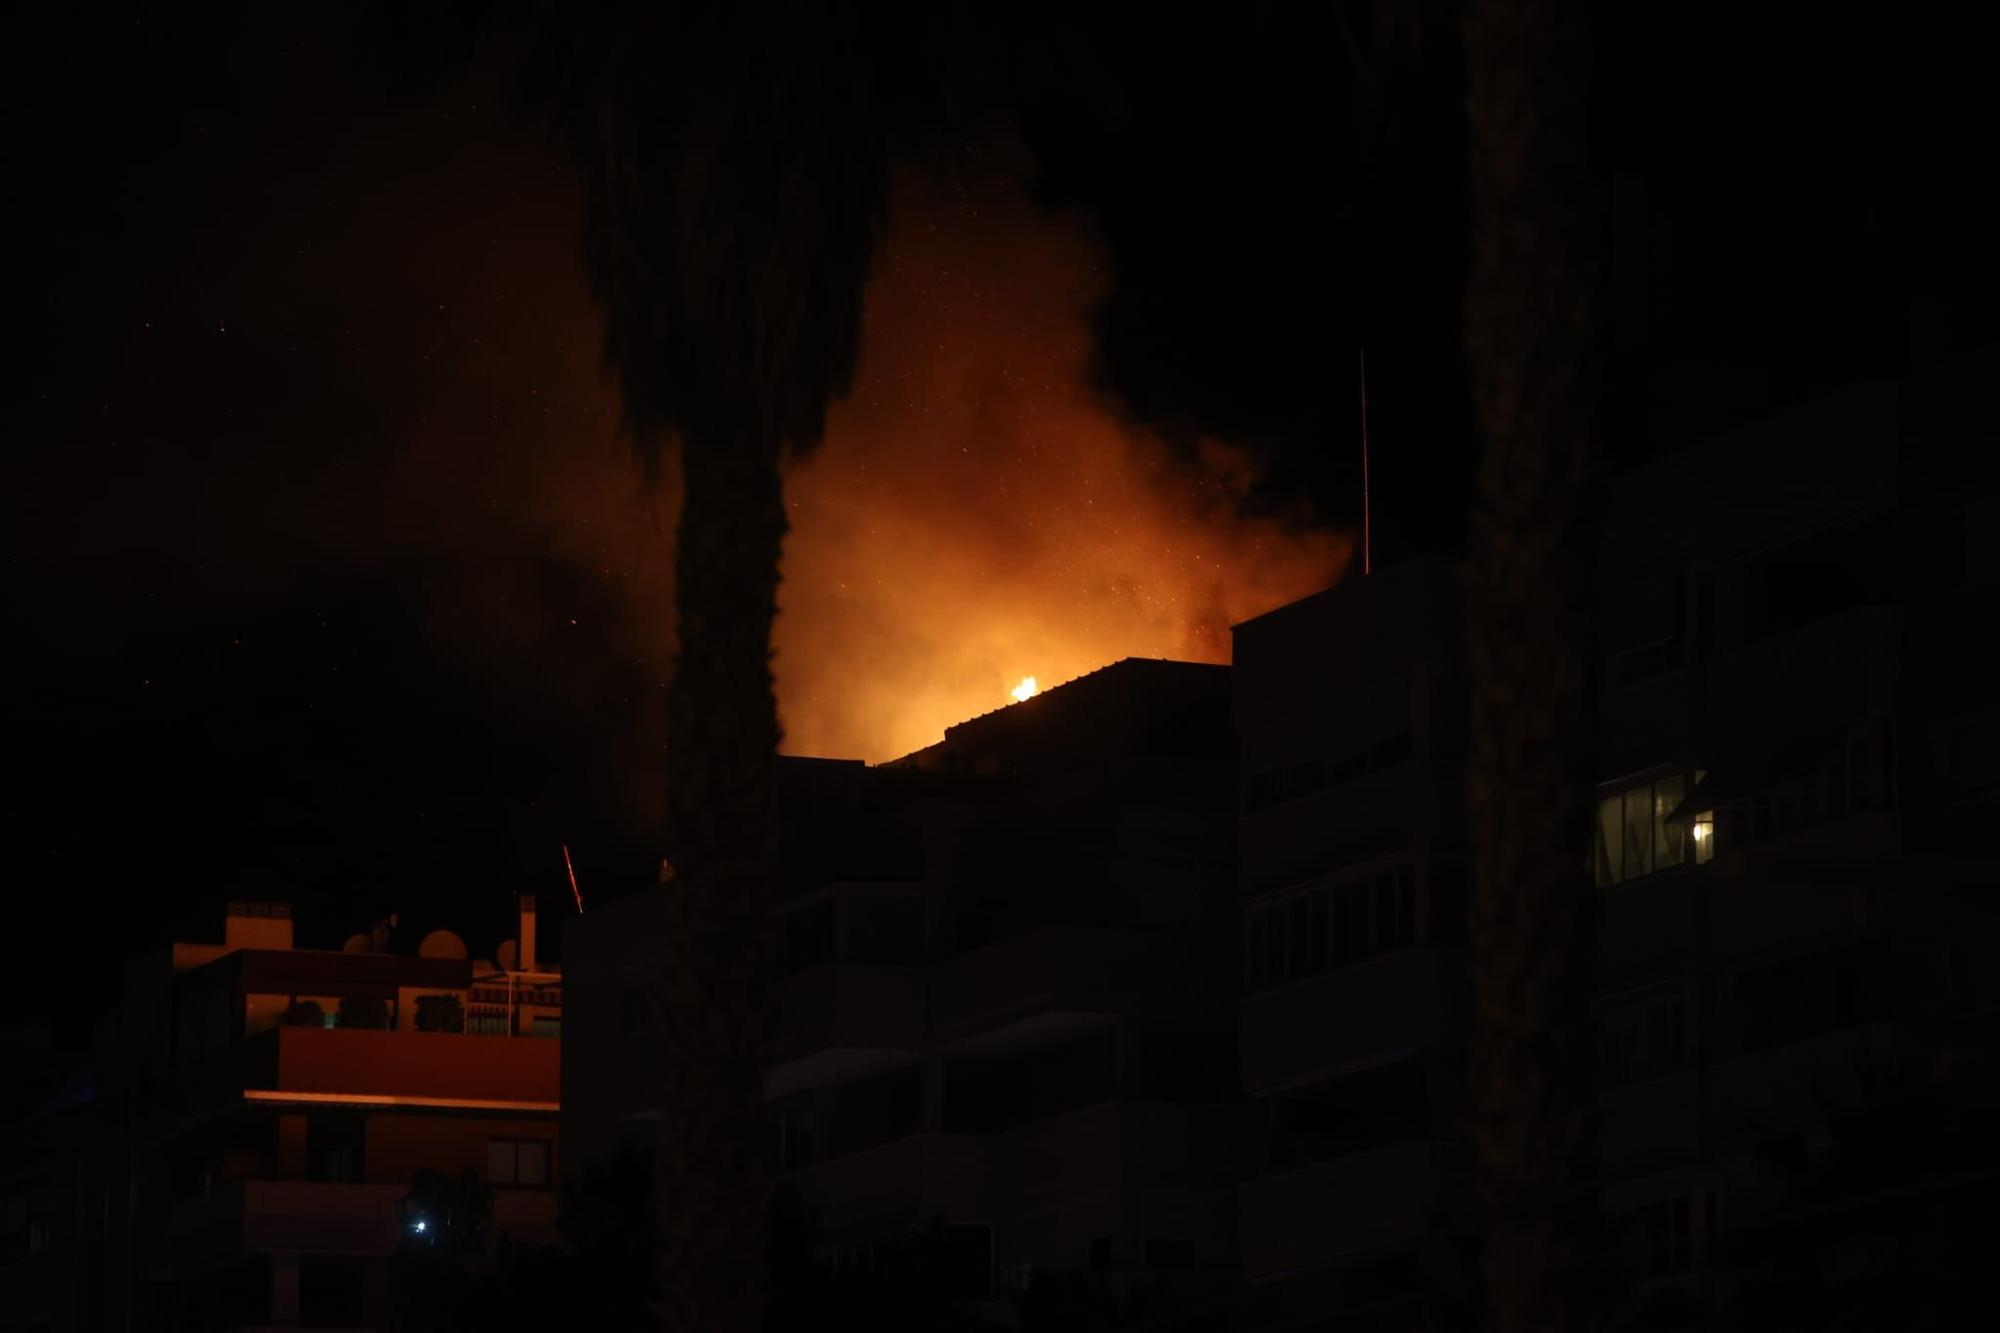 Aparatoso incendio en un piso de Playa de San Juan en Alicante